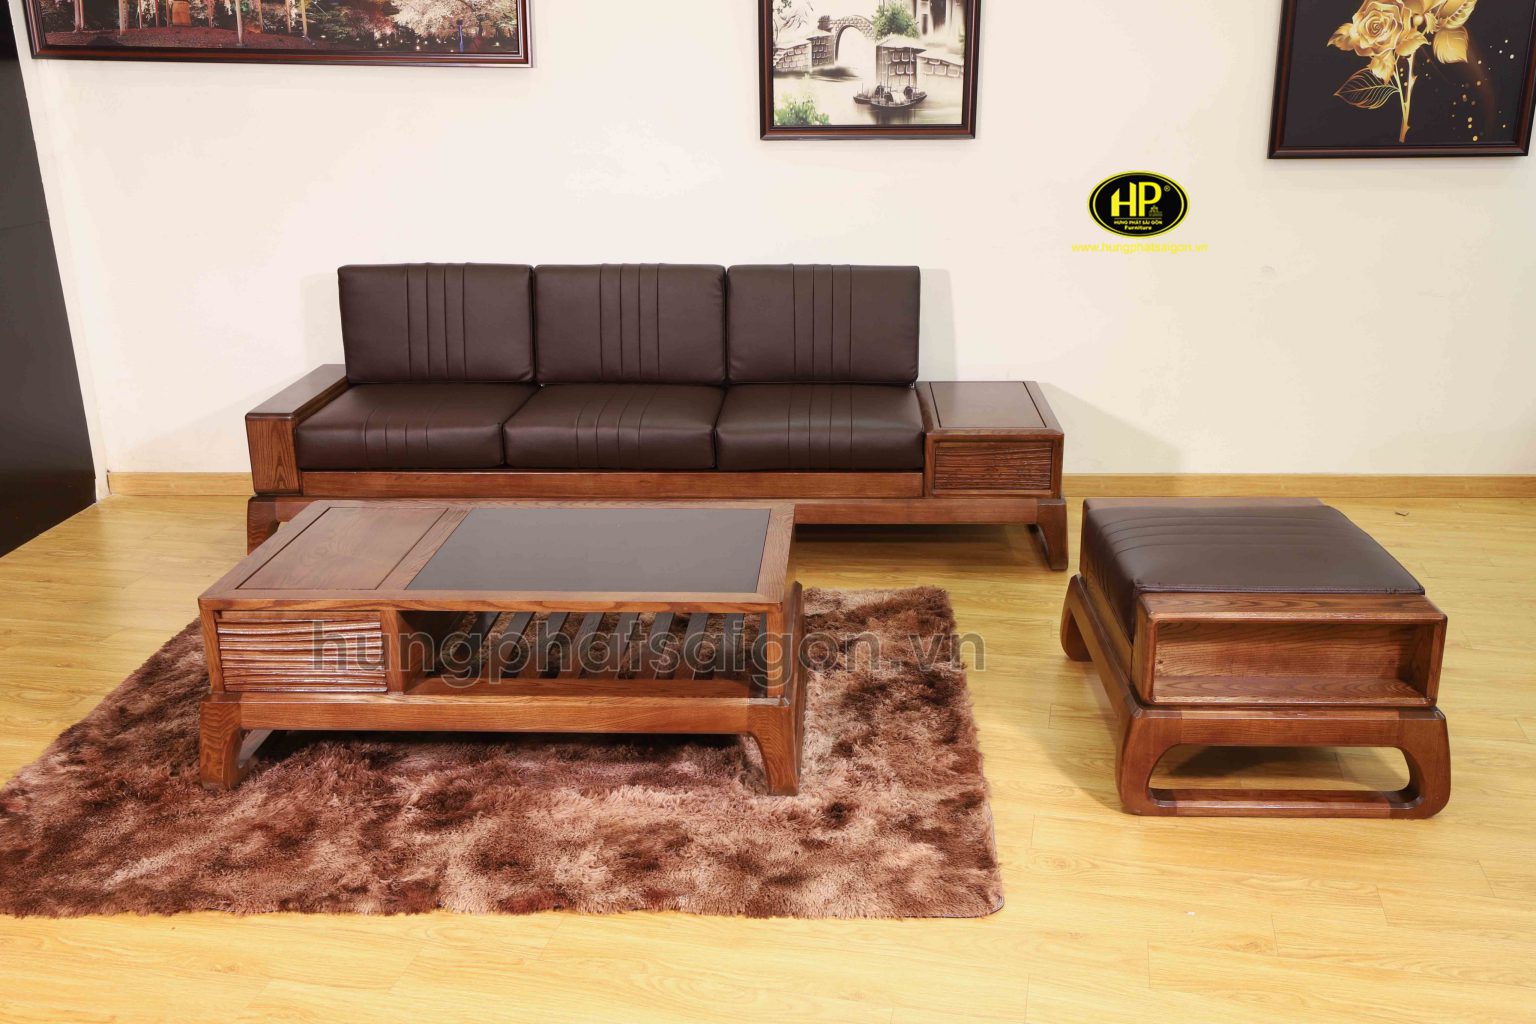 Giá mau sofa 3 chỗ ngồi tại Hưng Phát Sài Gòn rẻ hơn nhiều đơn vị khác trên thị trường 